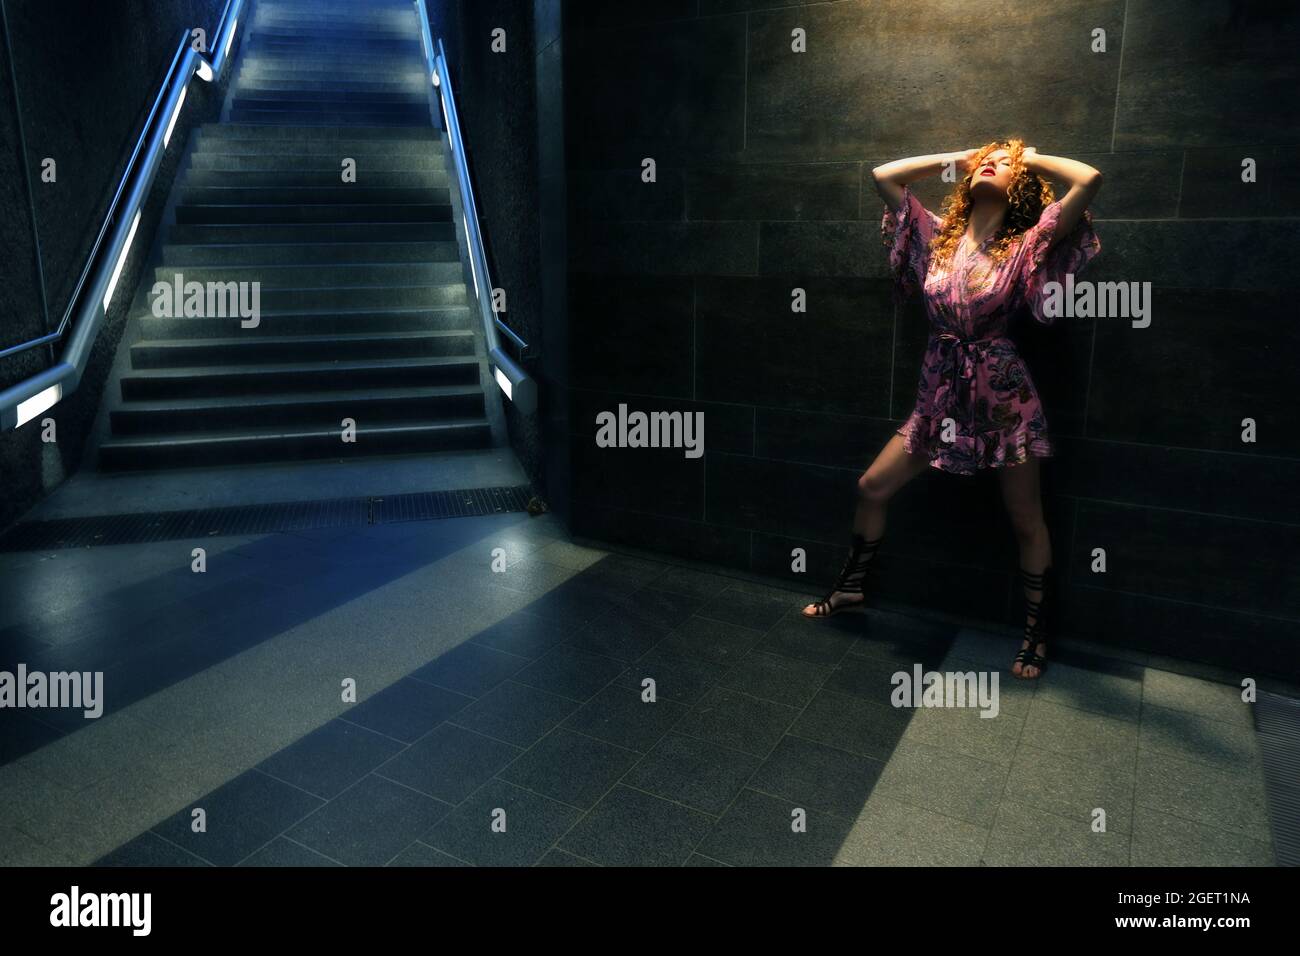 U Bahnhof in Nürnberg, in der U Bahn oder Metro  steht eine rothaarige junge Frau mit pinken Kleid auf den Treppen zur Untergrundbahn Stock Photo